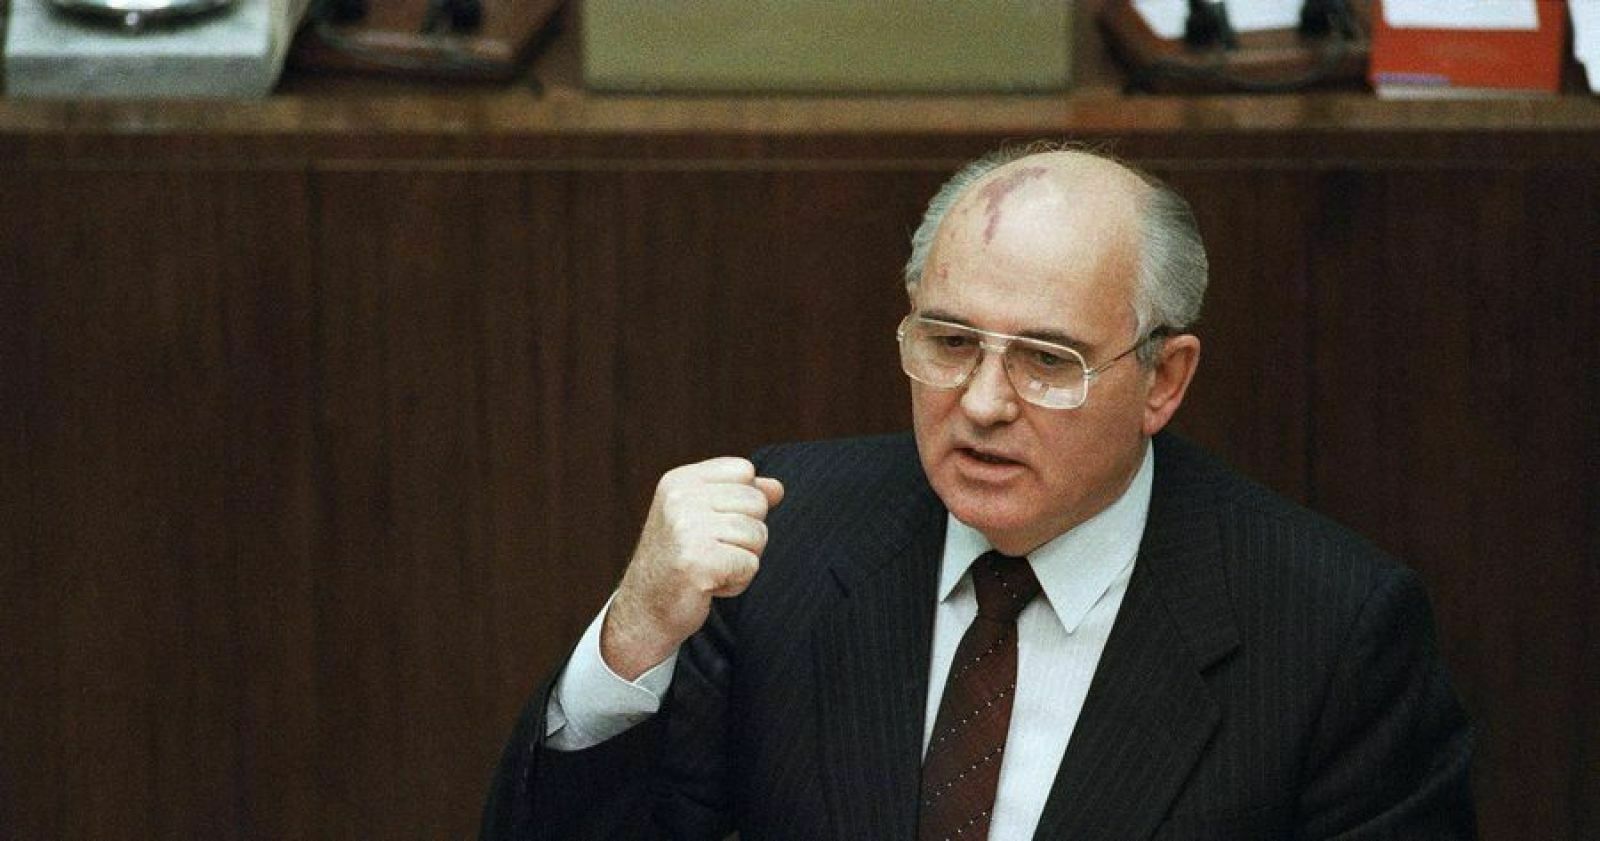 Михаил Гуцериев: "Горбачев подарил стране молодость"